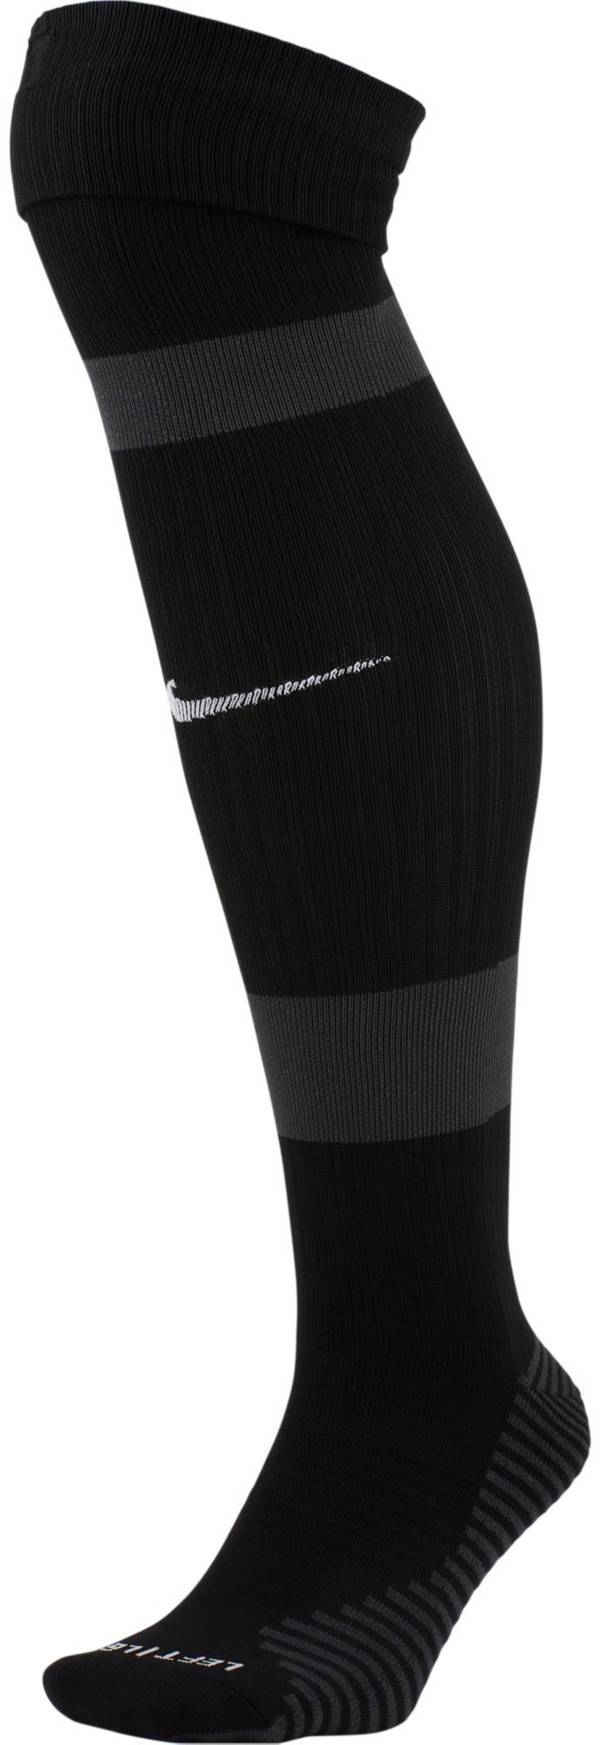 Nike MatchFit Knee-High Soccer Socks | Dick's Sporting Goods